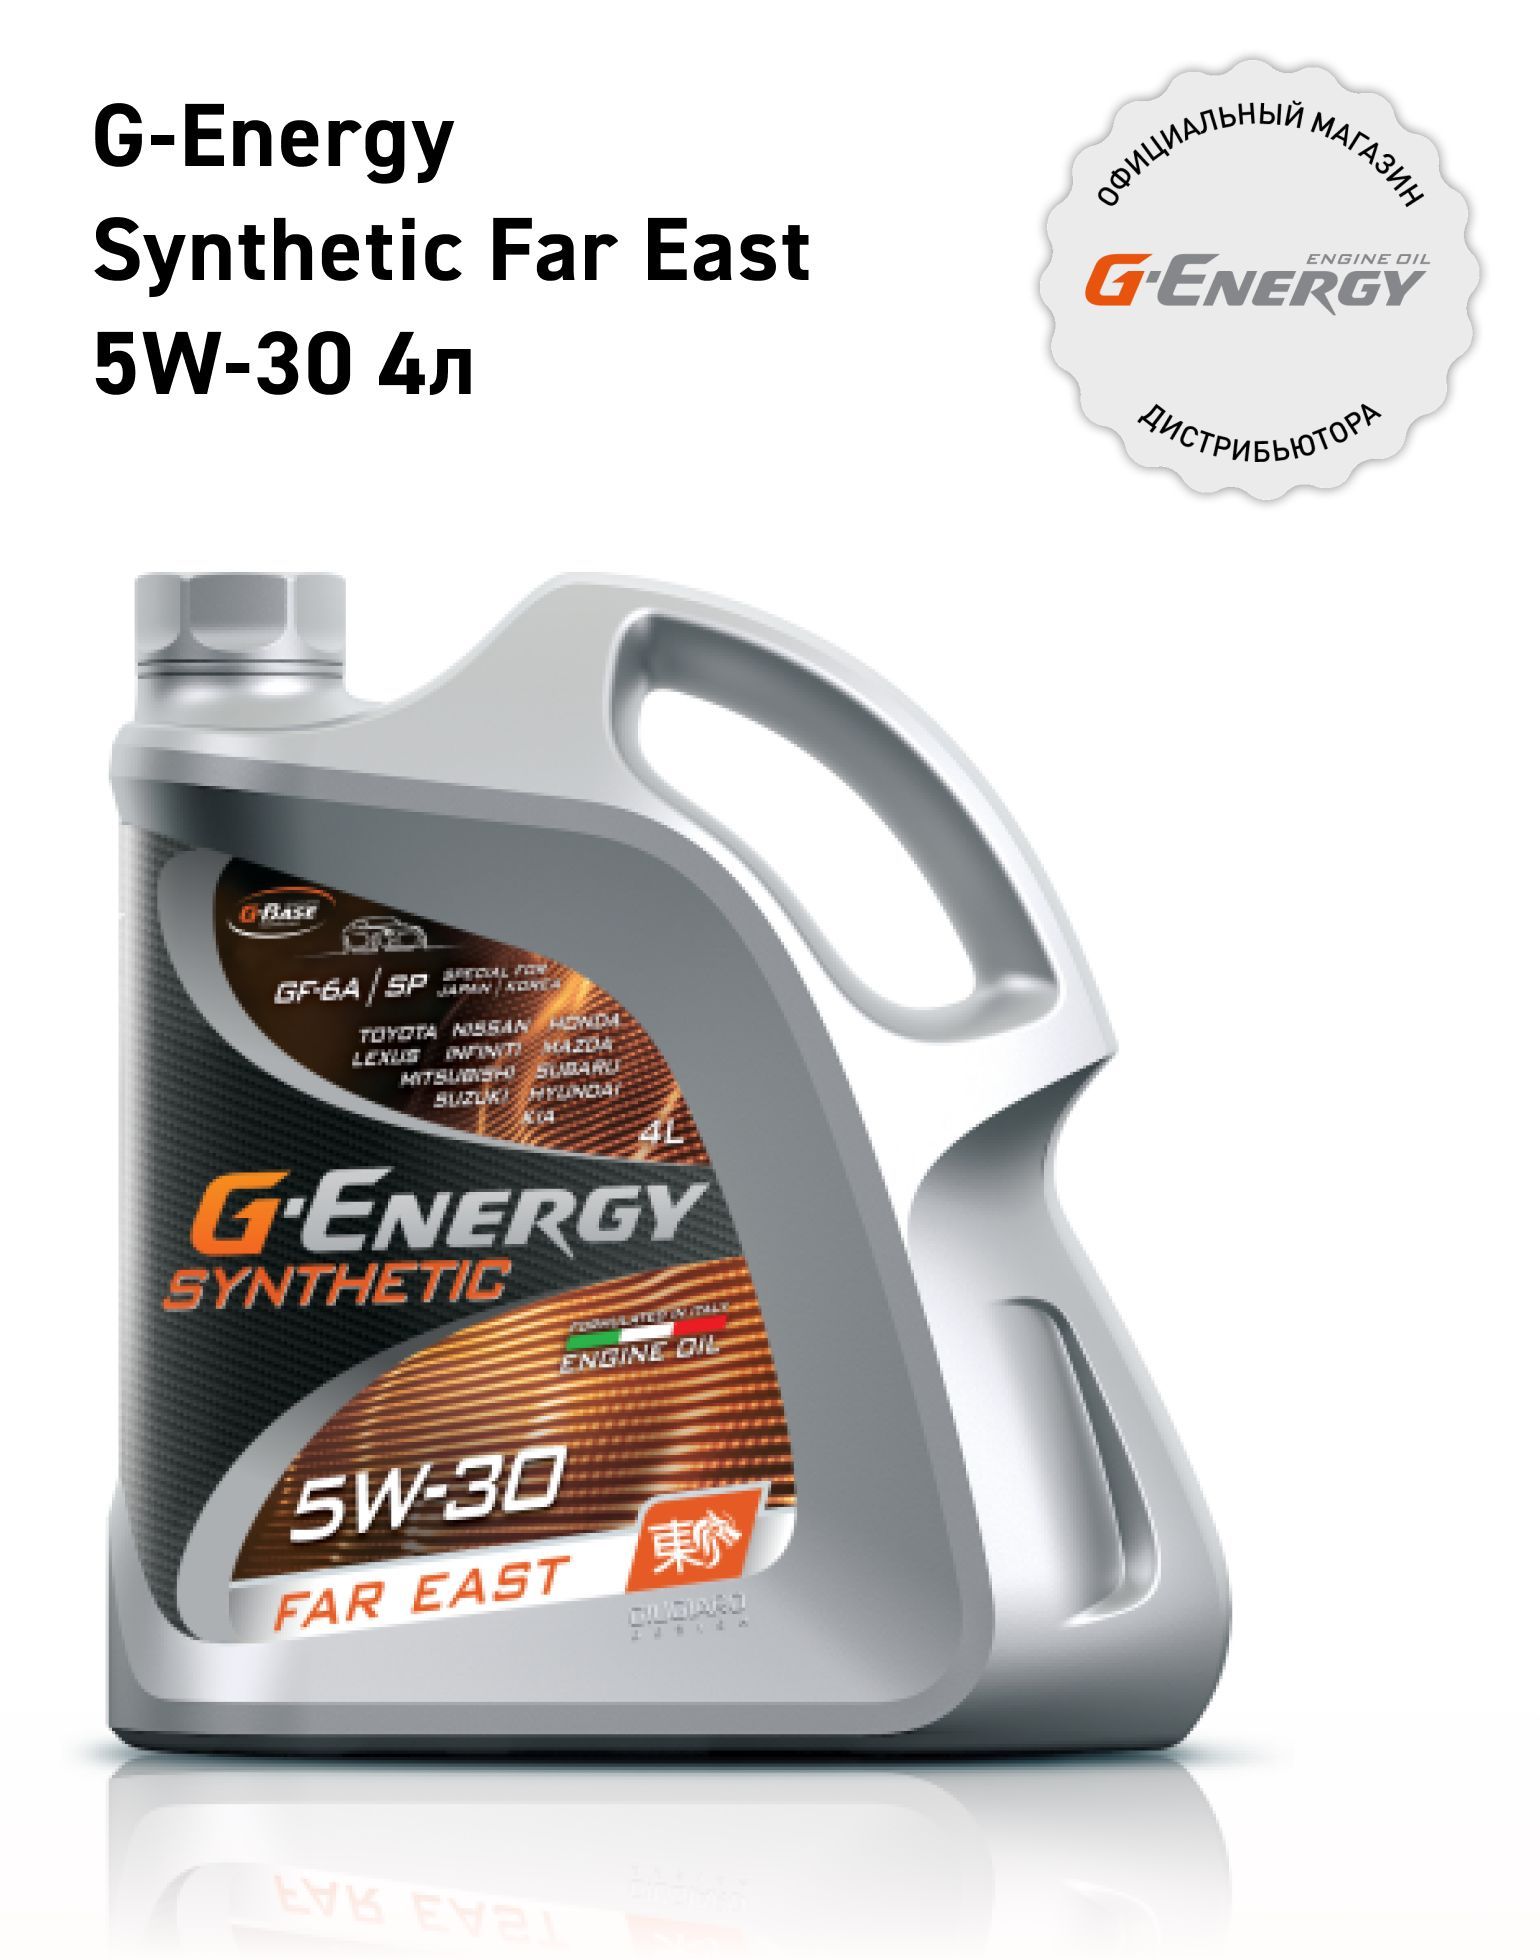 G-EnergySyntheticFarEast5W-30,Масломоторное,Синтетическое,4л